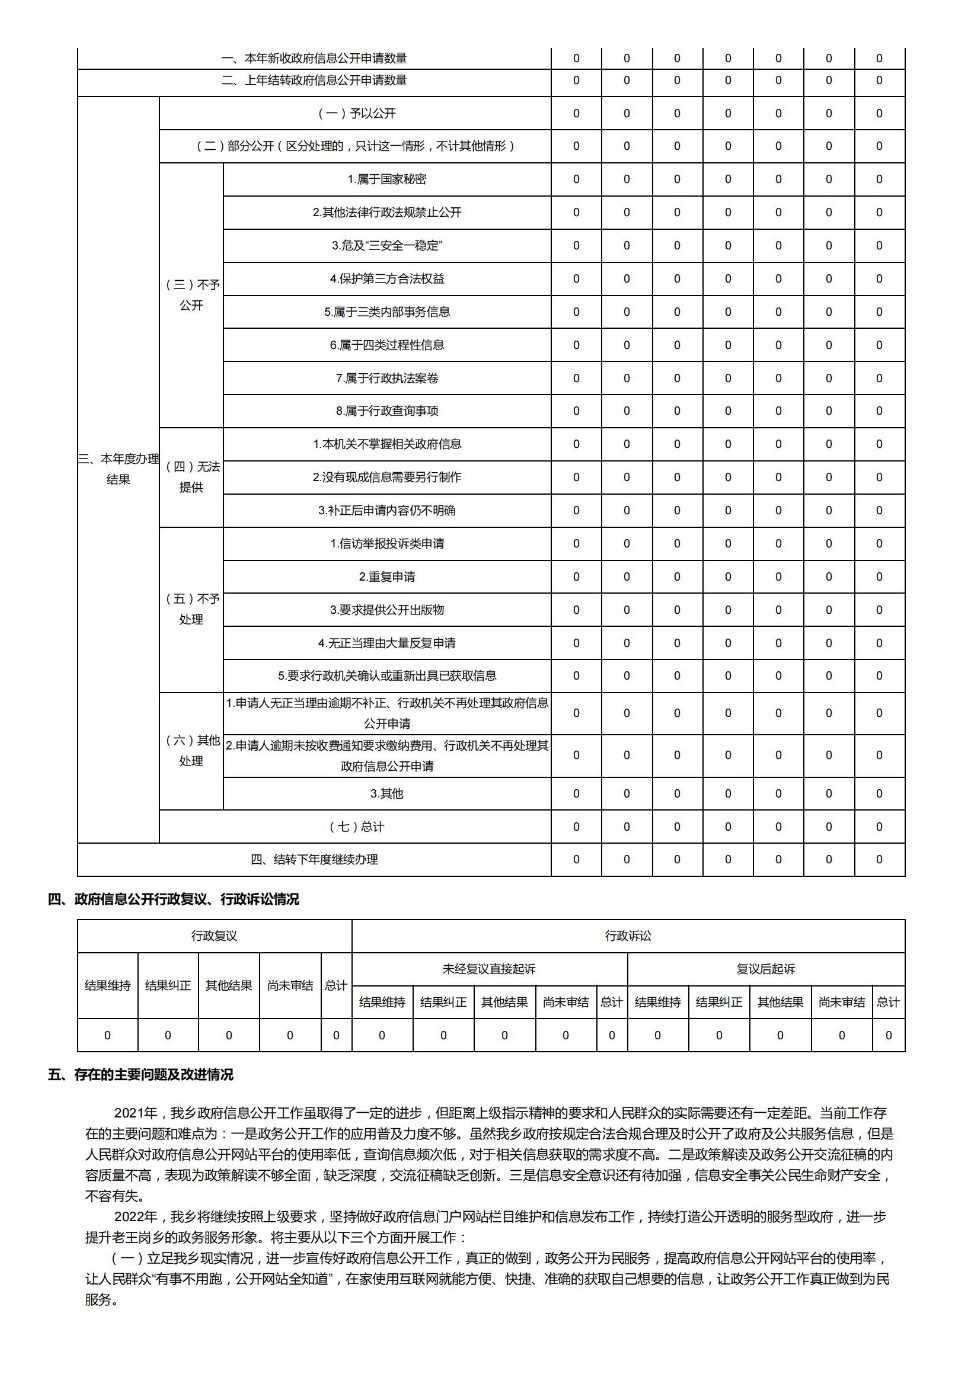 老王岗乡2021年政府信息公开工作年度报告_01.jpg